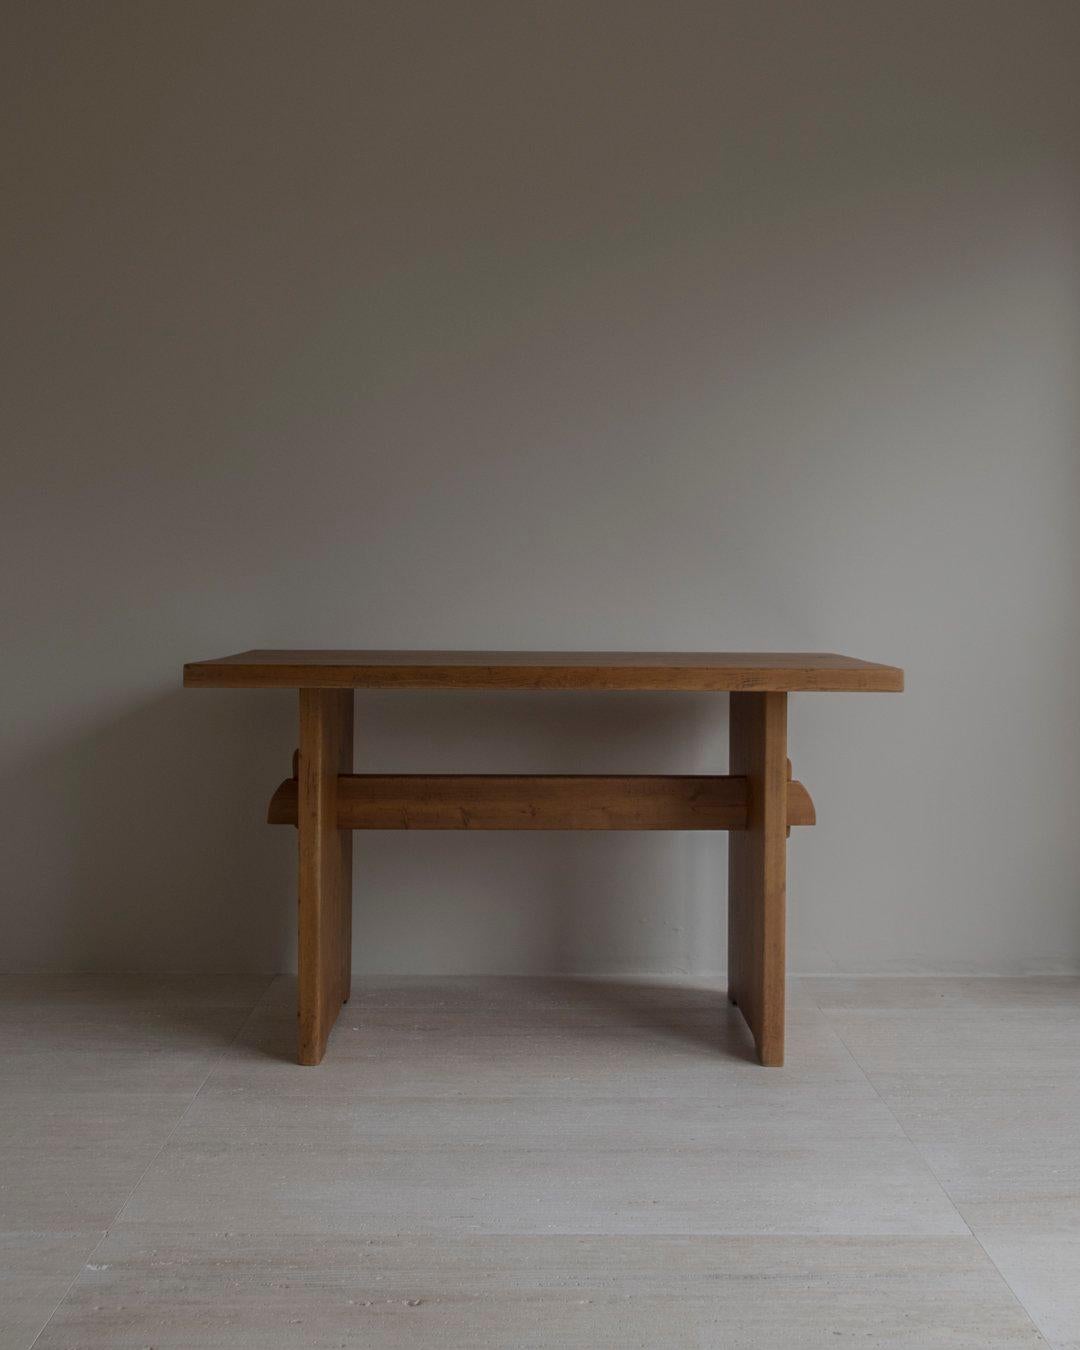 Édition spéciale de la table Lovö - Nordiska Kompaniet, attribuée à Axel Einar Hjorth. La table a été utilisée dans un restaurant meublé par Nordiska Kompaniet dans les années 1930, avec des chaises Lovö. La provenance complète sera fournie. Belle